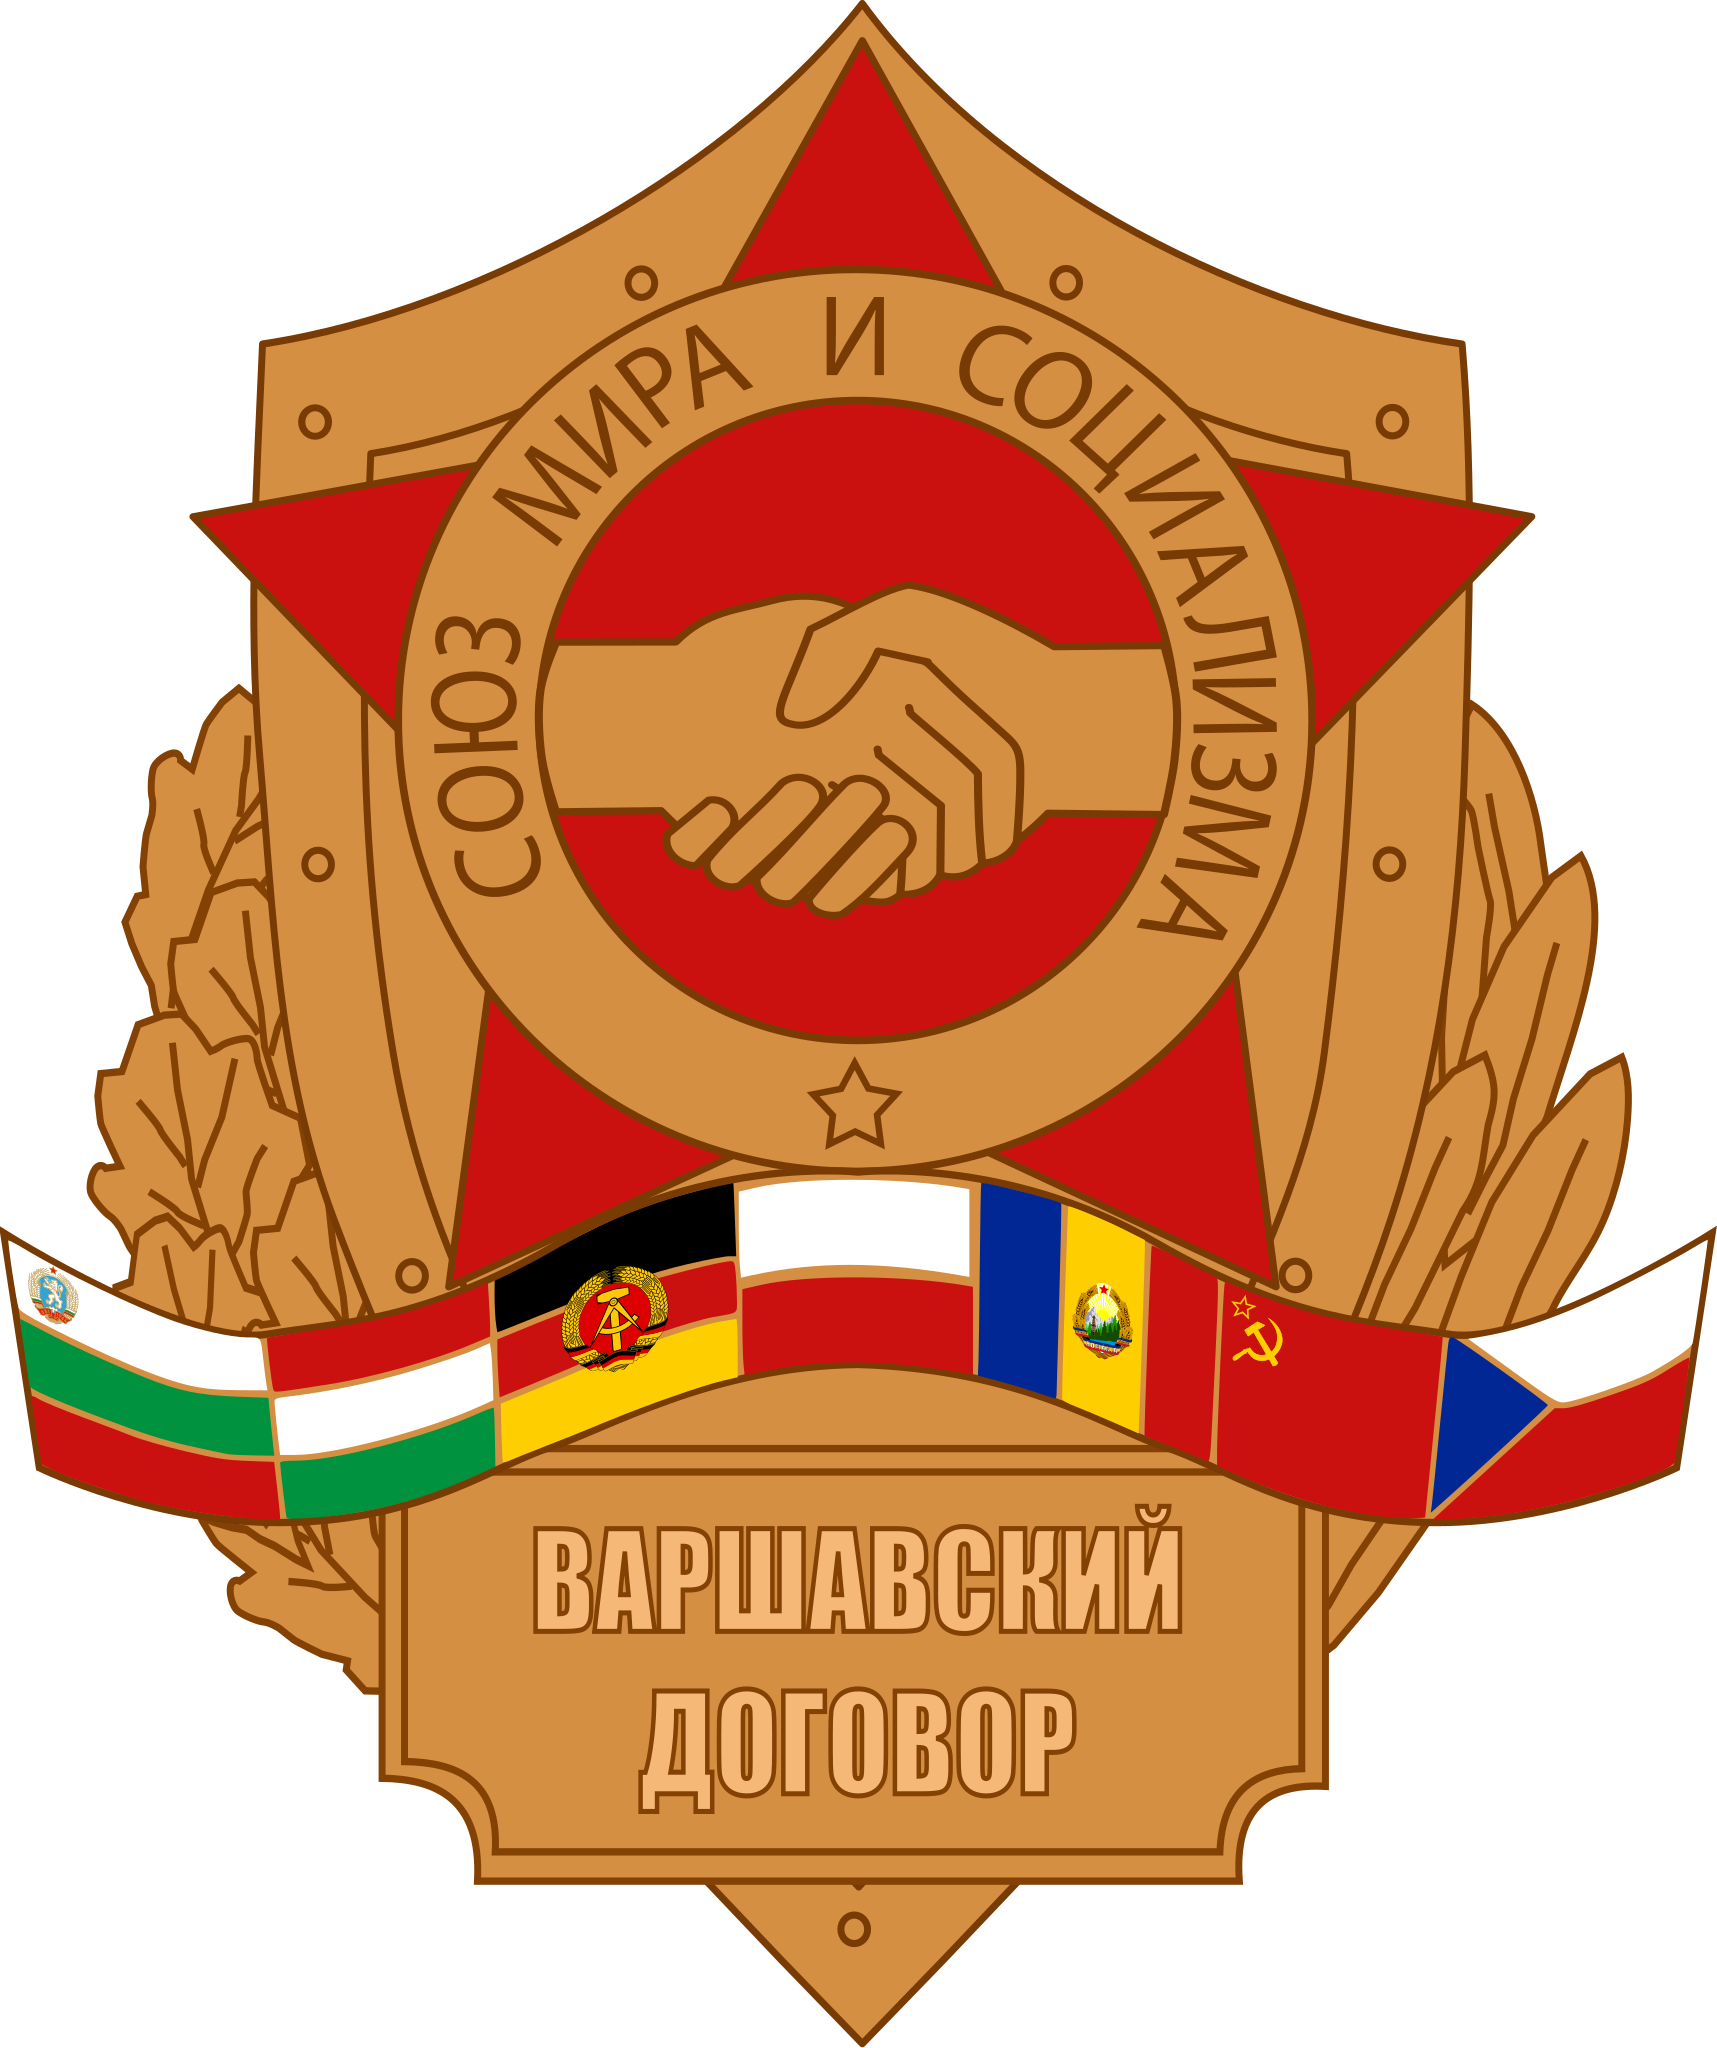 File:Warsaw Pact logo.png